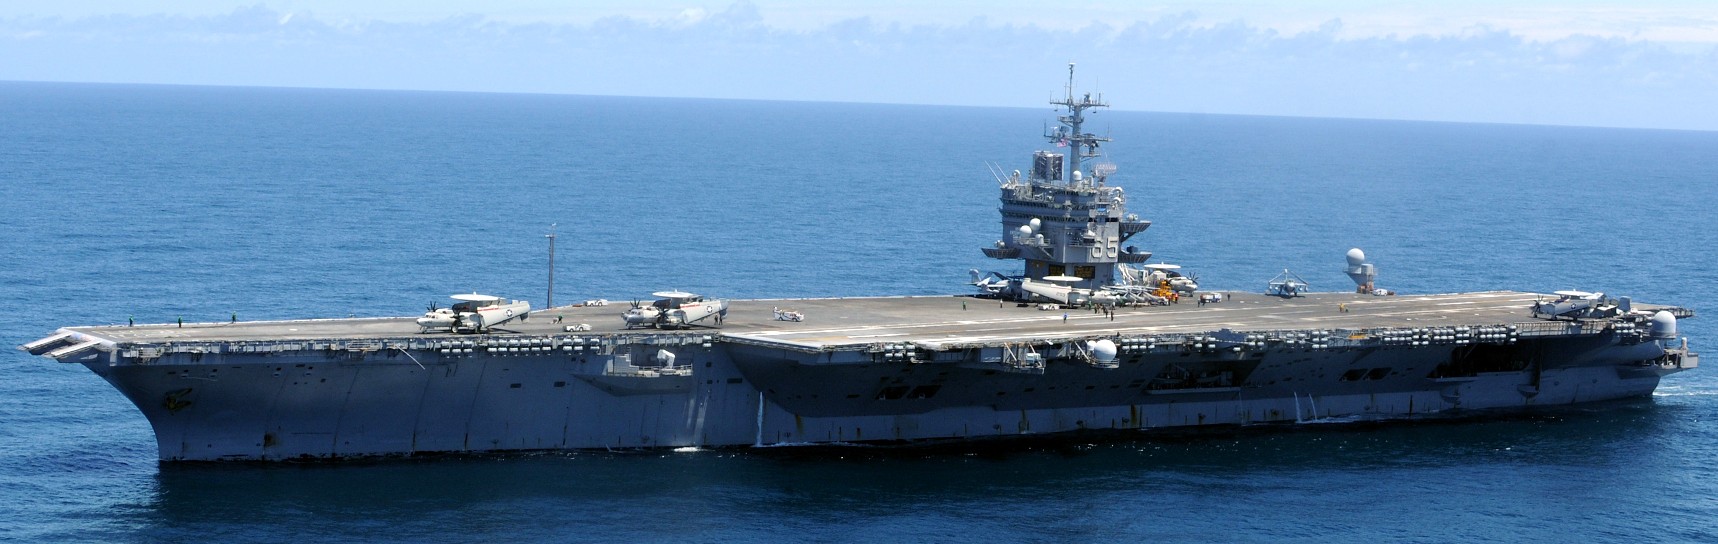 cvn-65 uss enterprise aircraft carrier us navy 33